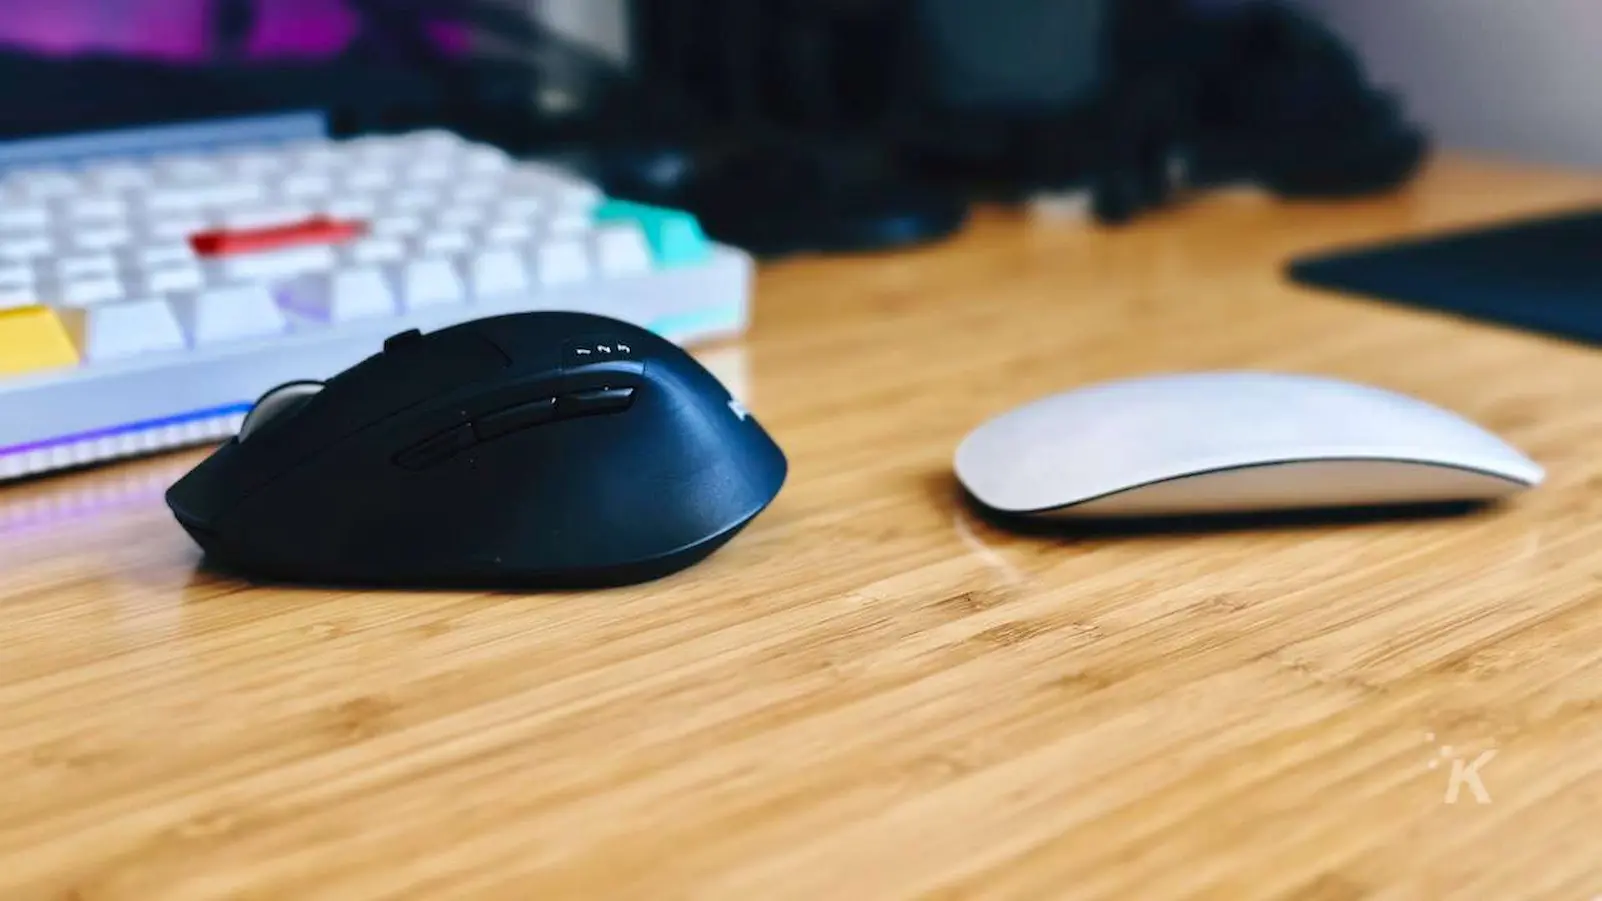 imagem lado a lado do mouse mágico da apple versus o mouse logitech m720 na mesa do escritório